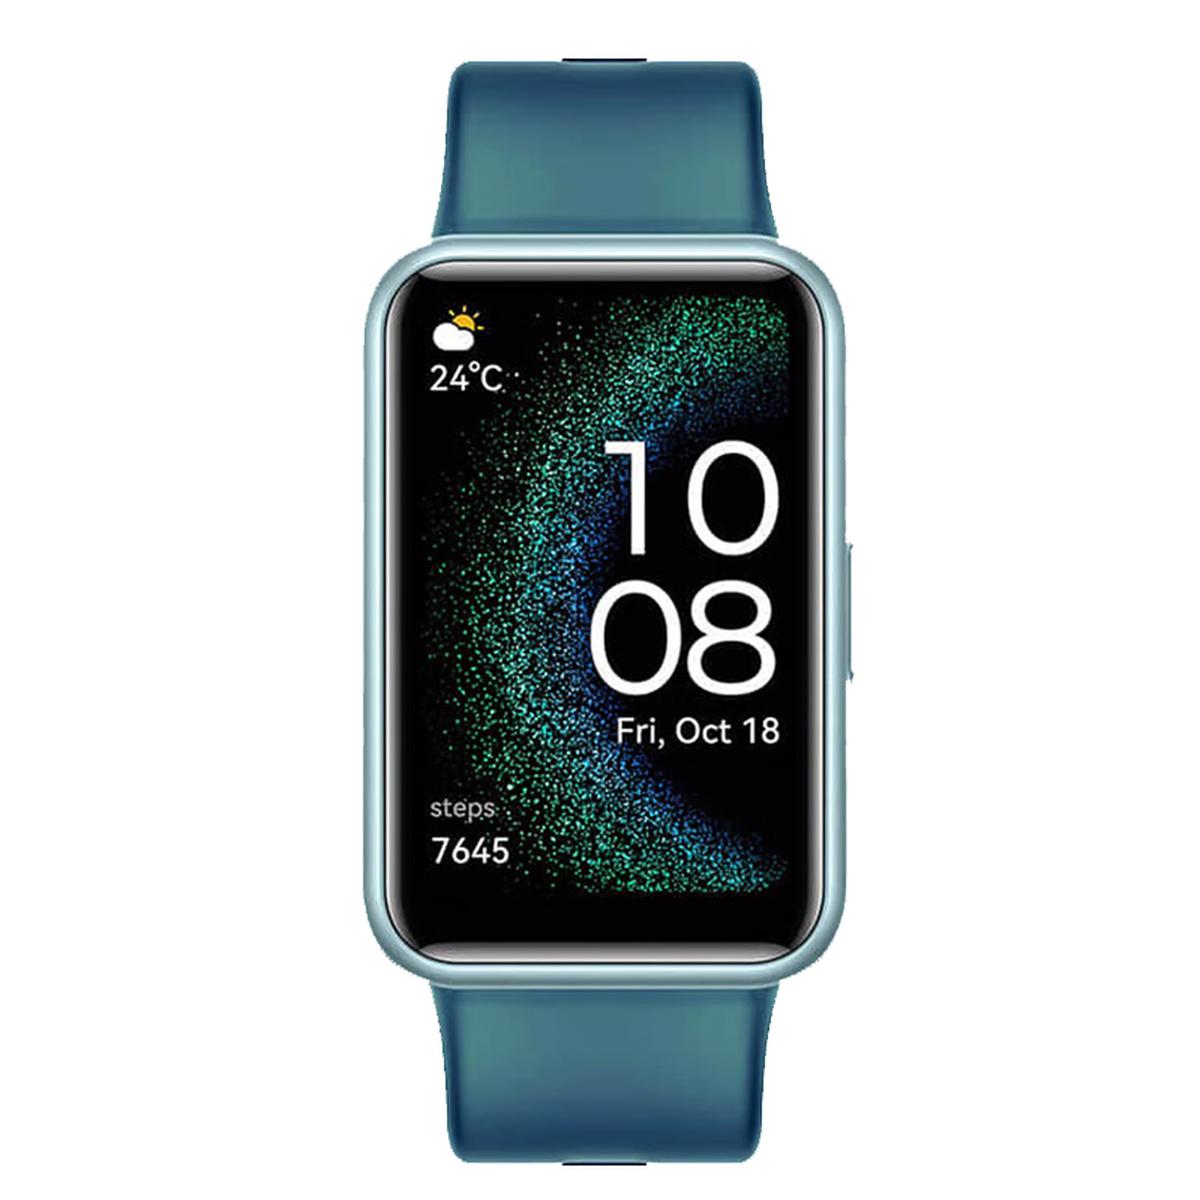 Nuevo Huawei Watch Fit: características, precio y ficha técnica